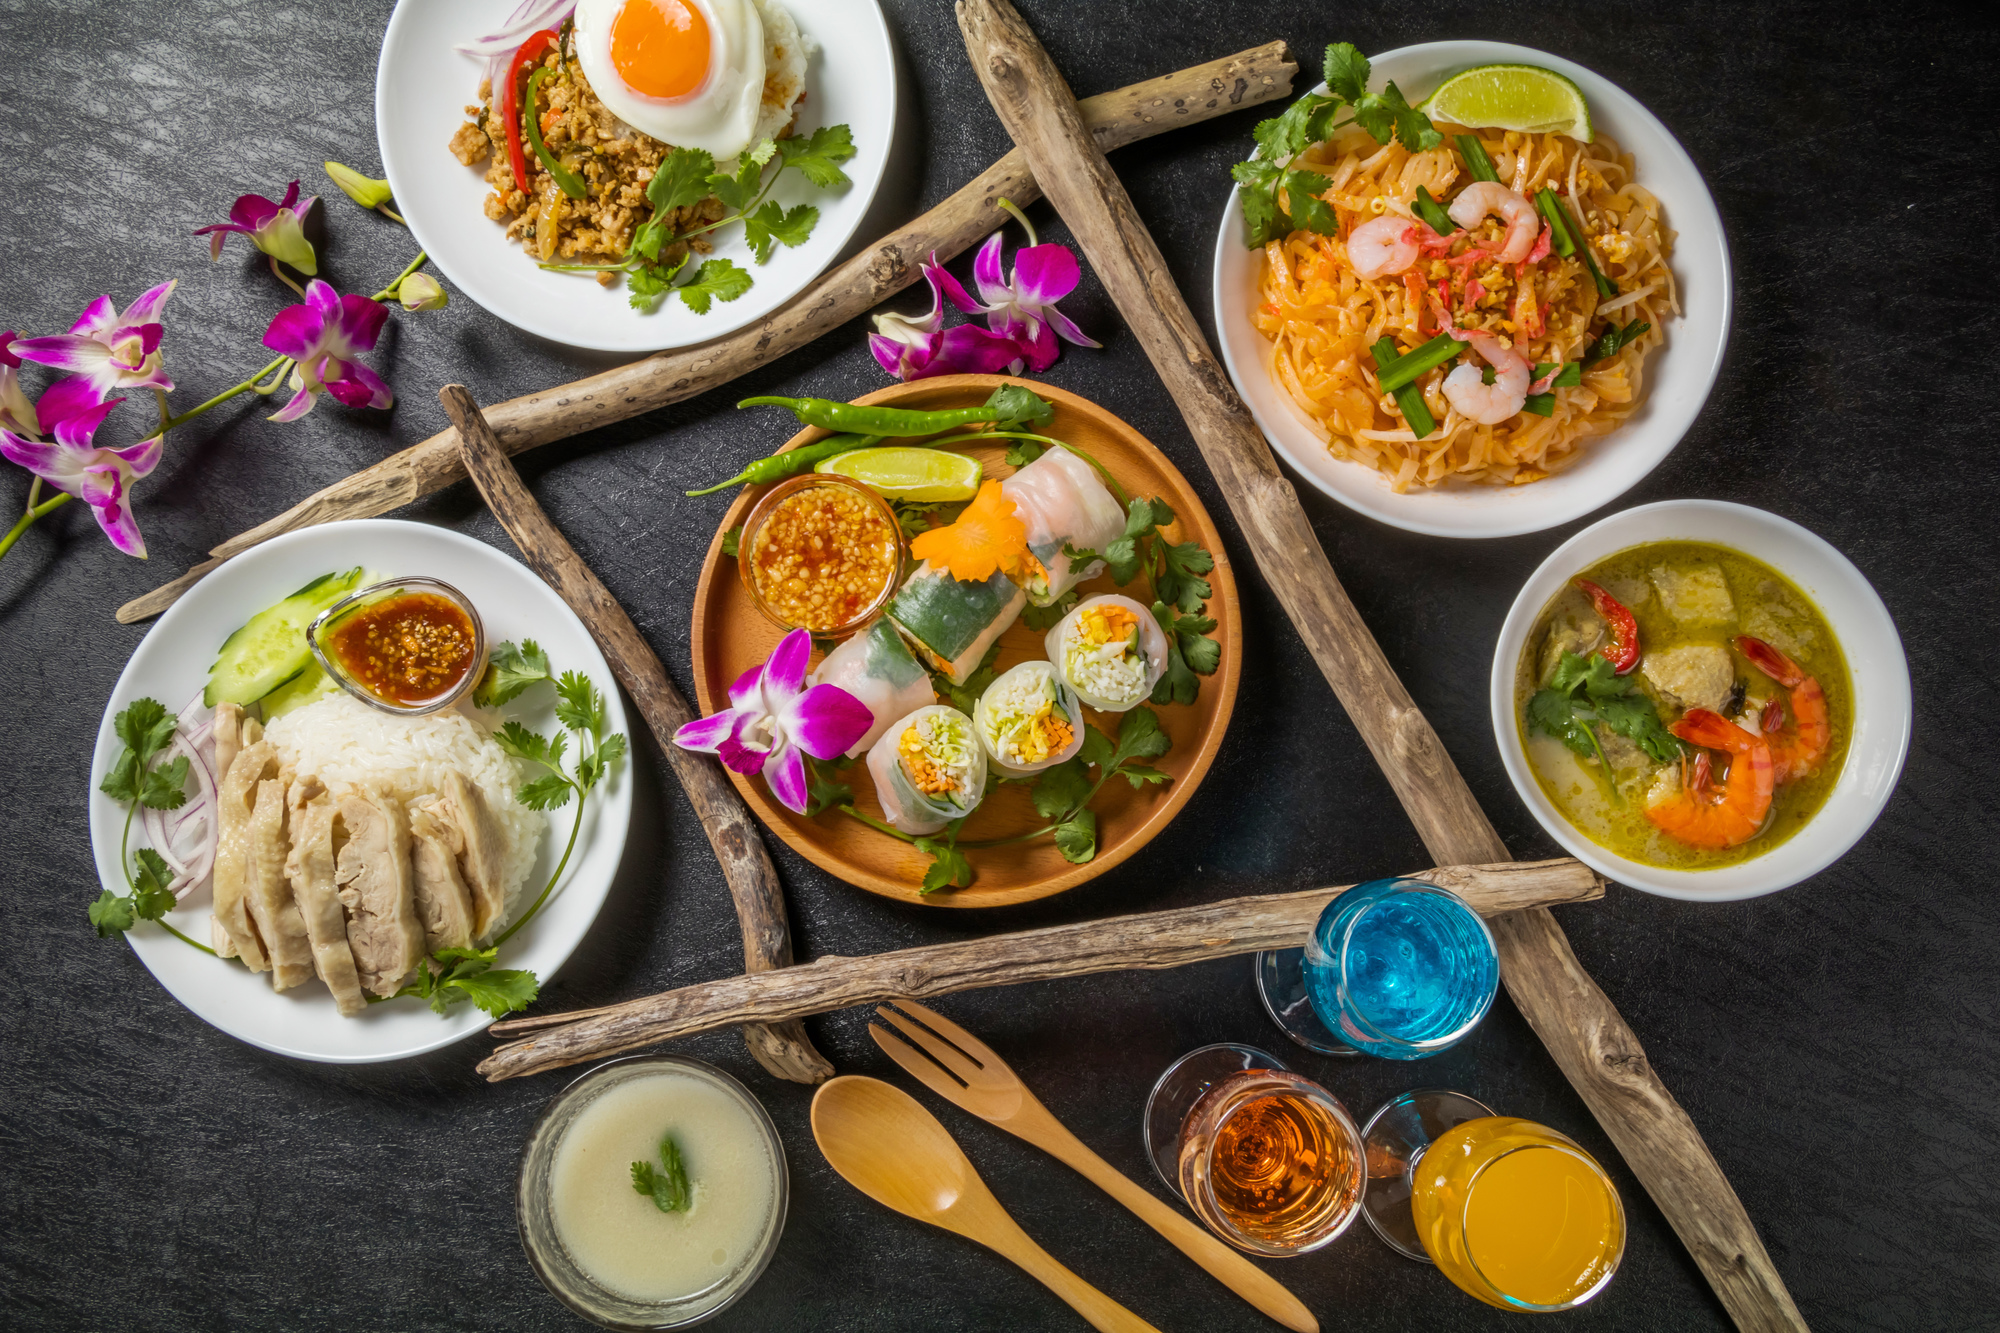 ベトナムの食べ物 料理は日本人に合う おすすめの食べ物は にほんご日和